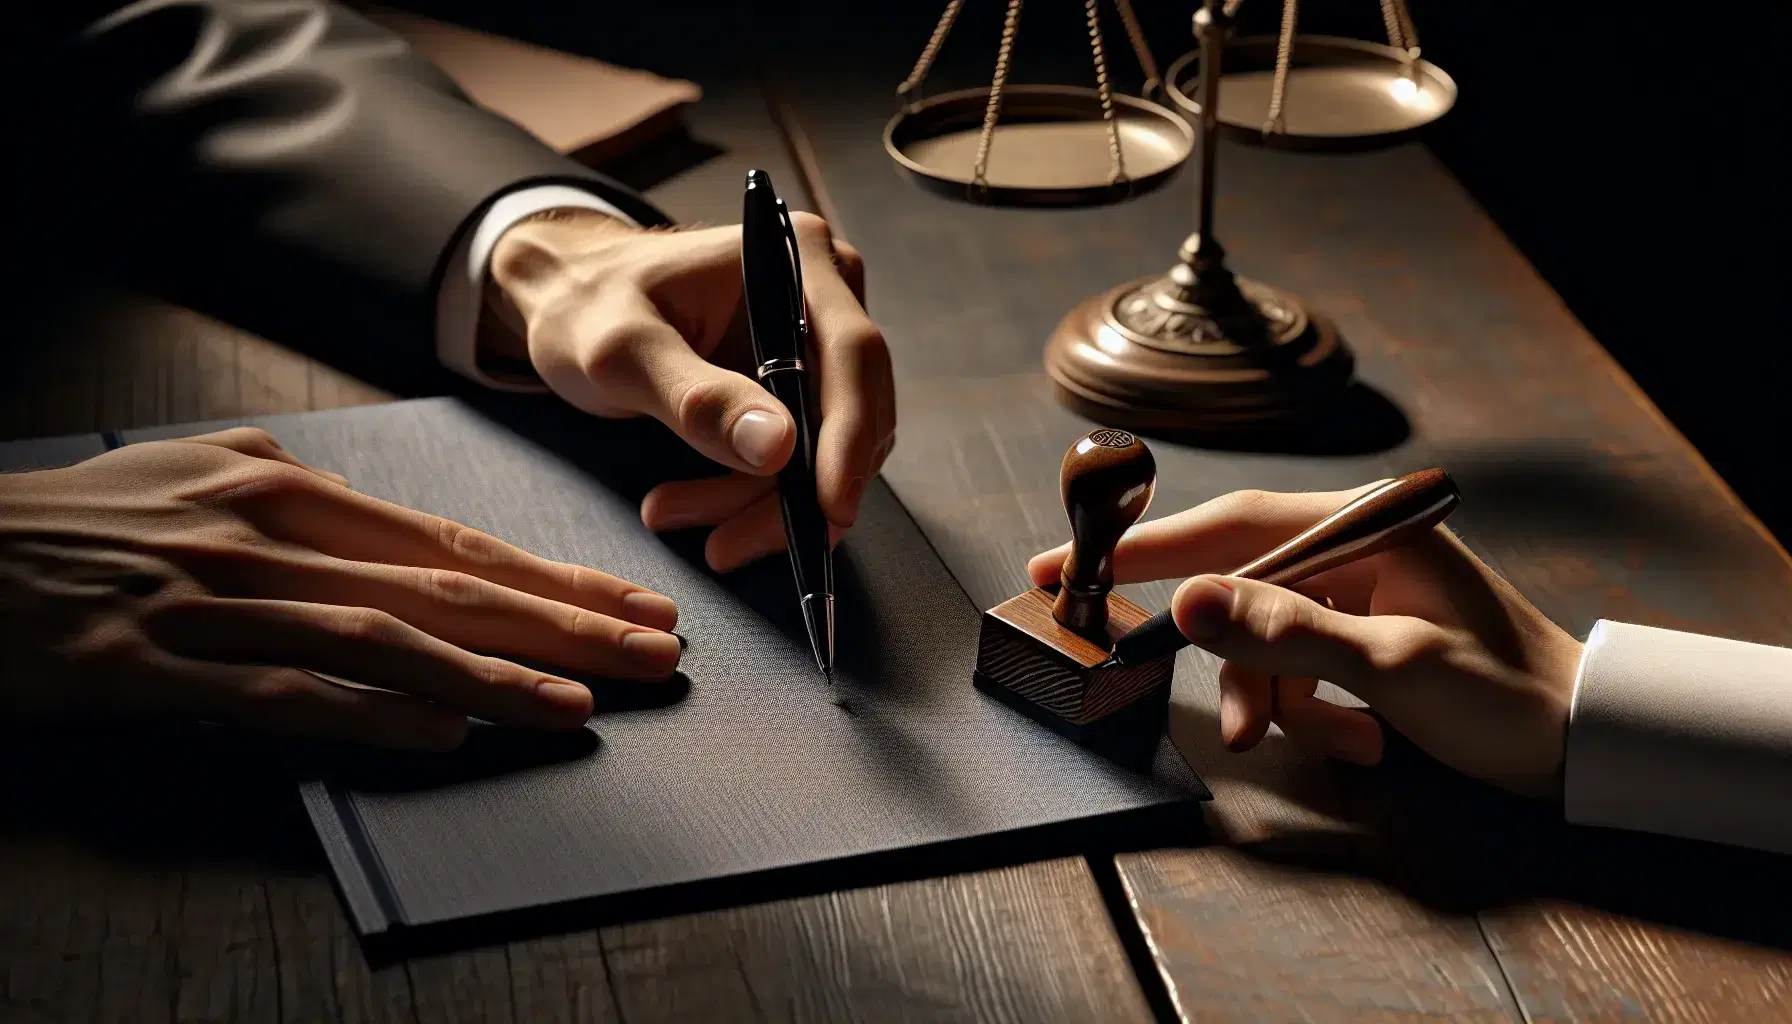 Manos sobre mesa de madera oscura con una sosteniendo un bolígrafo negro y la otra señalando un documento junto a un libro azul oscuro y un sello de goma, con una balanza de justicia dorada al fondo.